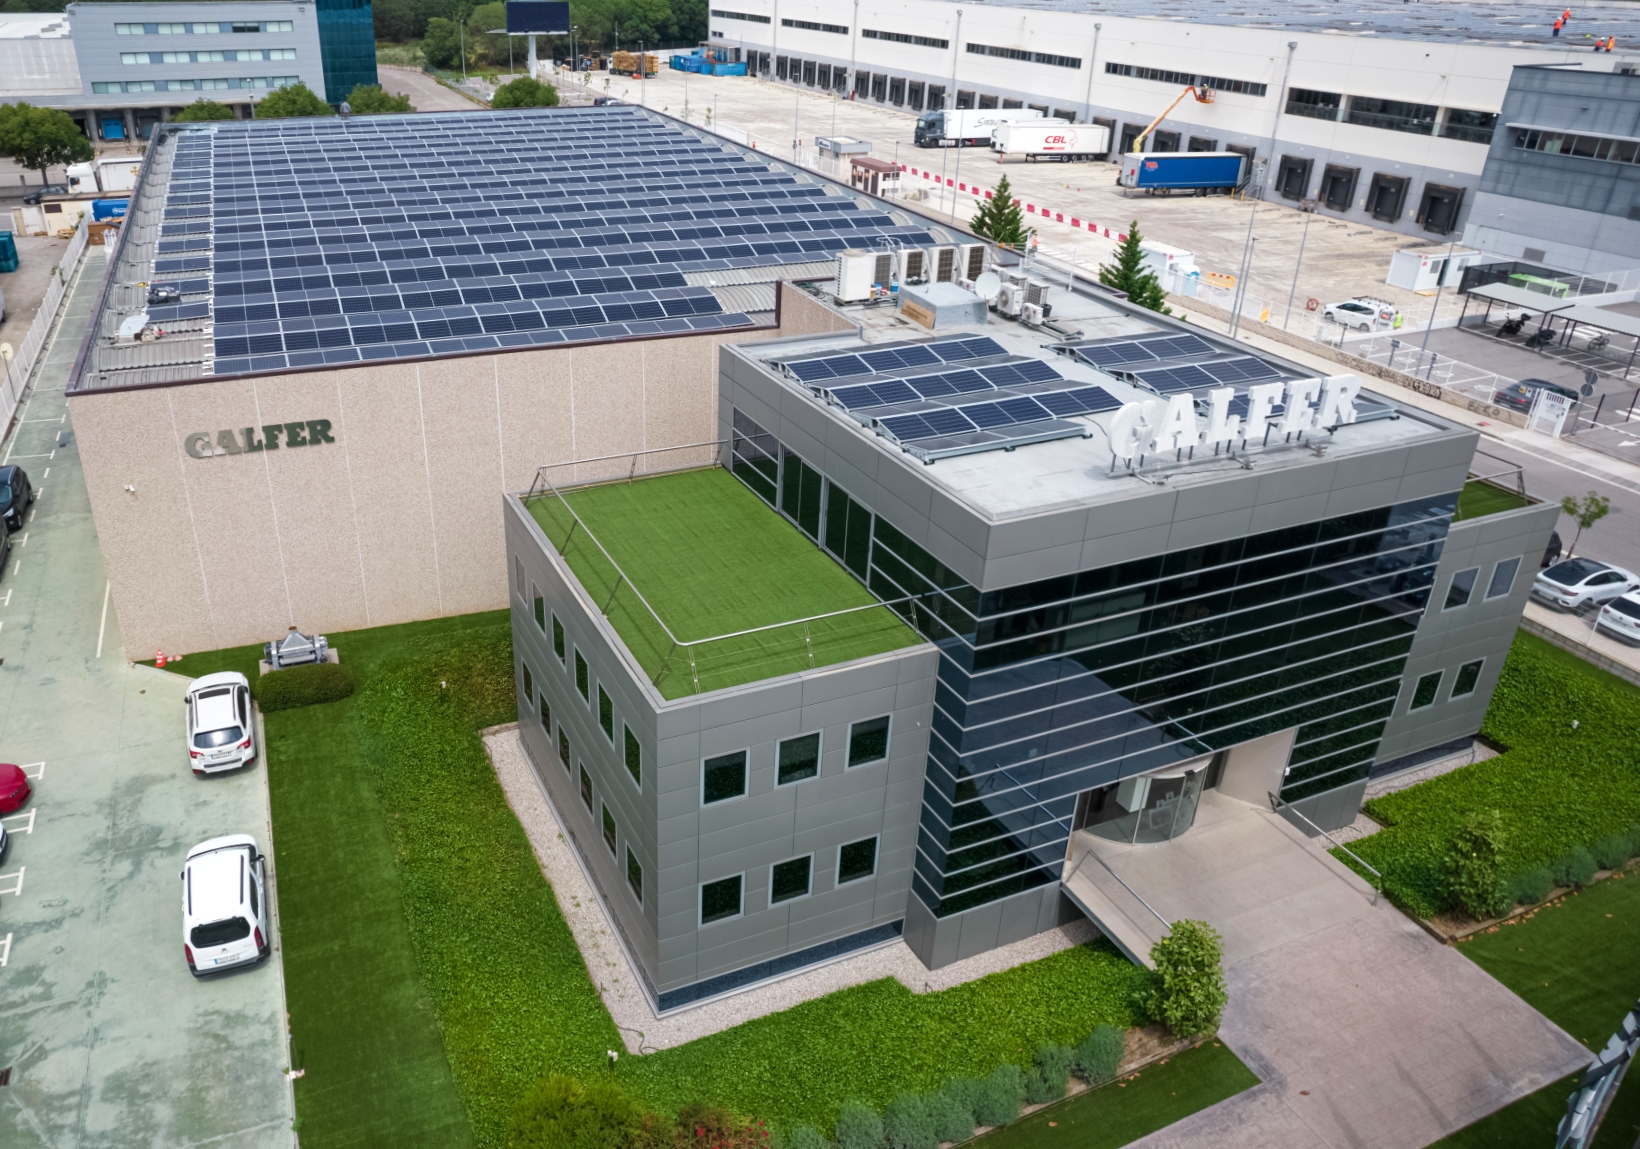 Instalación de placas solares en Granollers - Industrias Galfer S.A